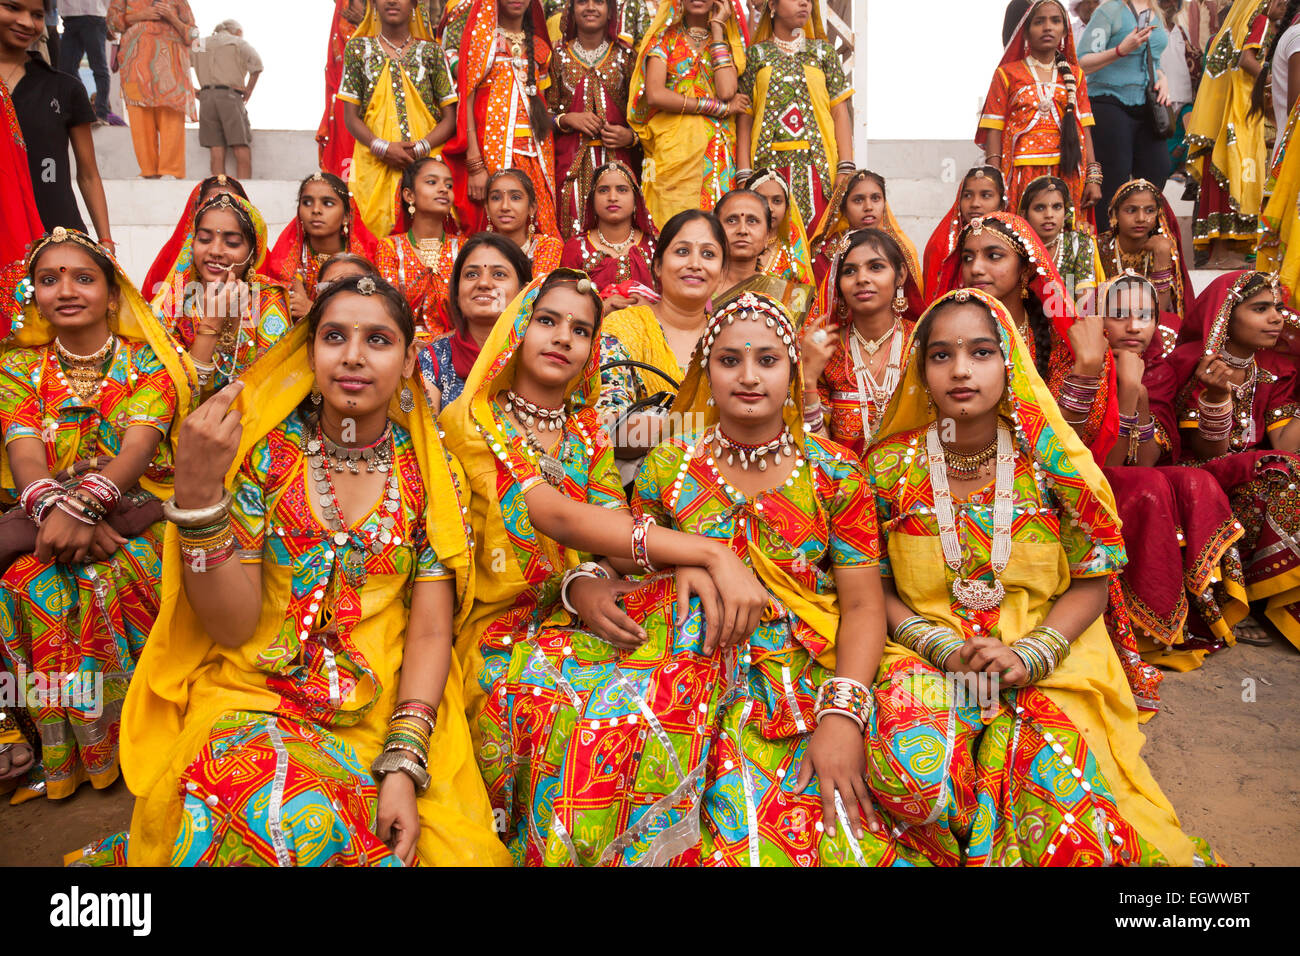 Giovane donna nella loro tipica colorato abito tradizionale al camel fair Pushkar Mela, Pushkar, Rajasthan, India, Asia Foto Stock